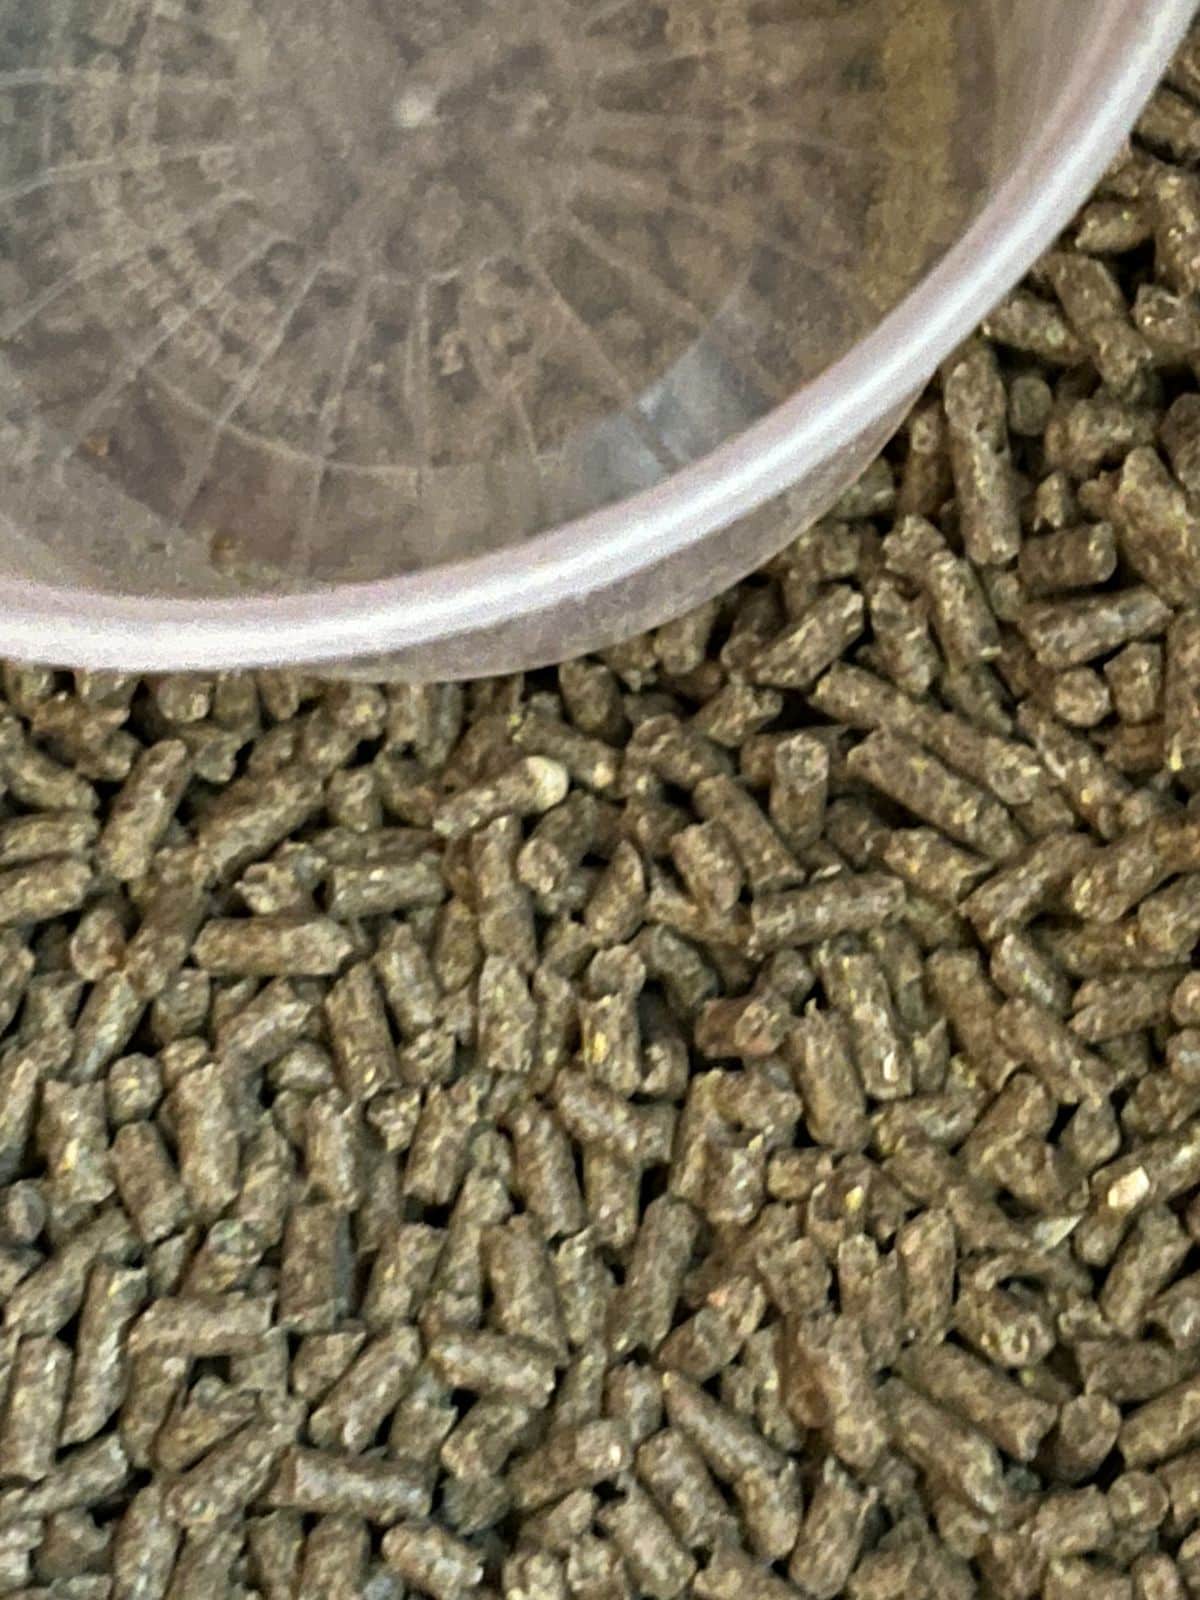 Quality rabbit pellets by Poulin Grain